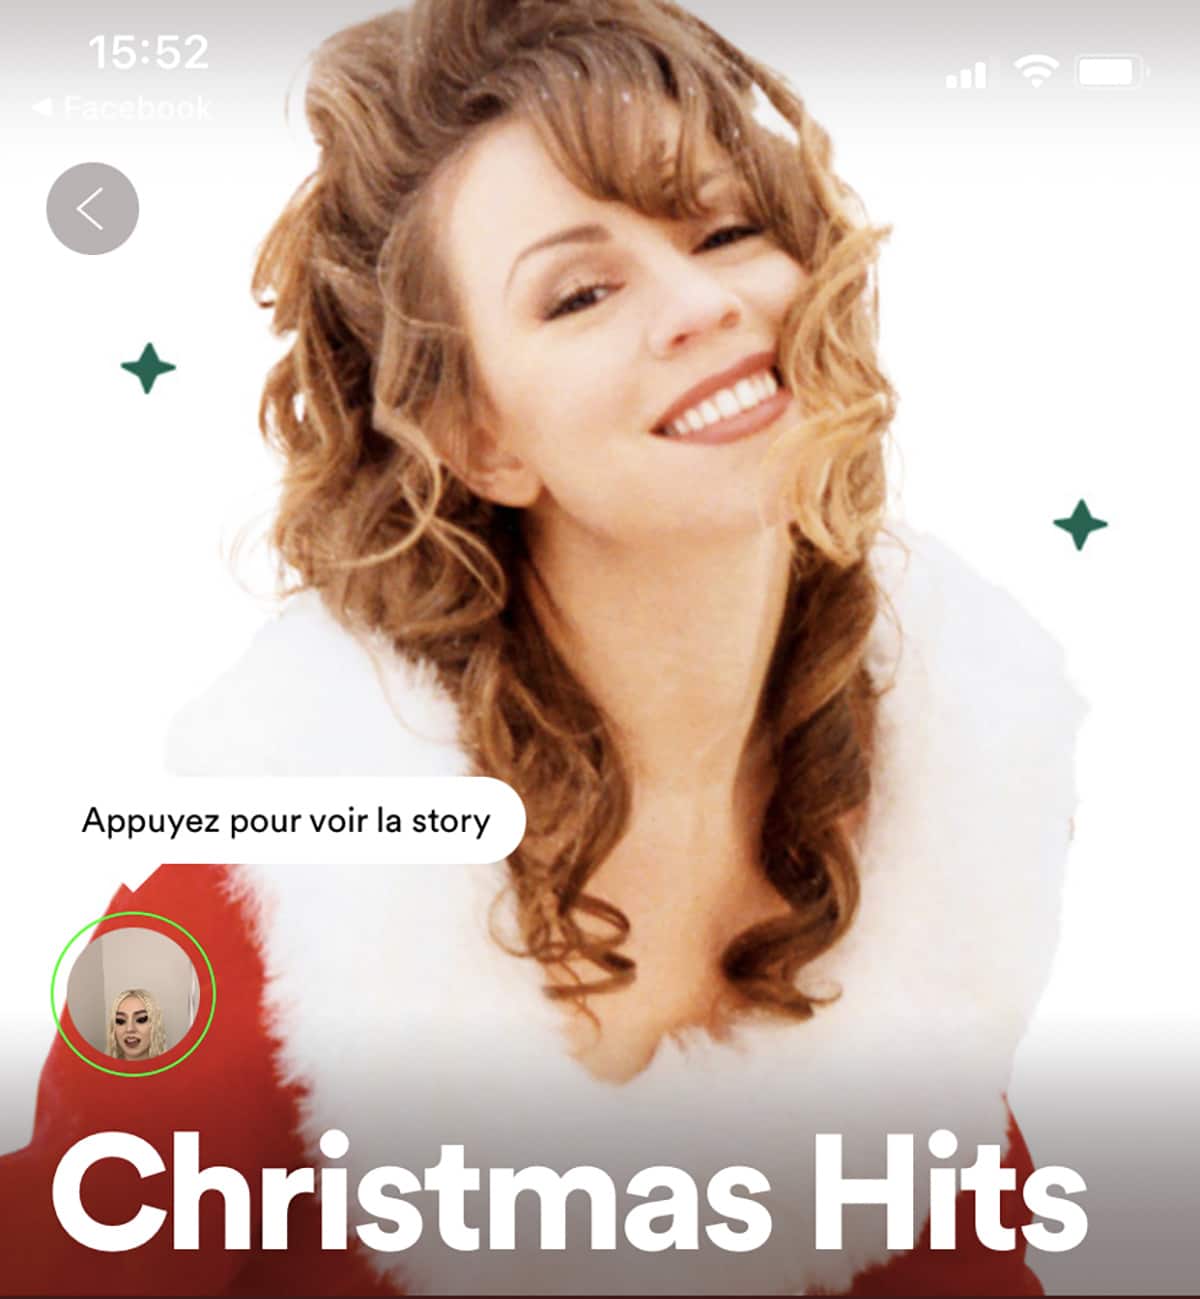 Exemple de stories sur la playlist "Christmas Hits" de Spotify.